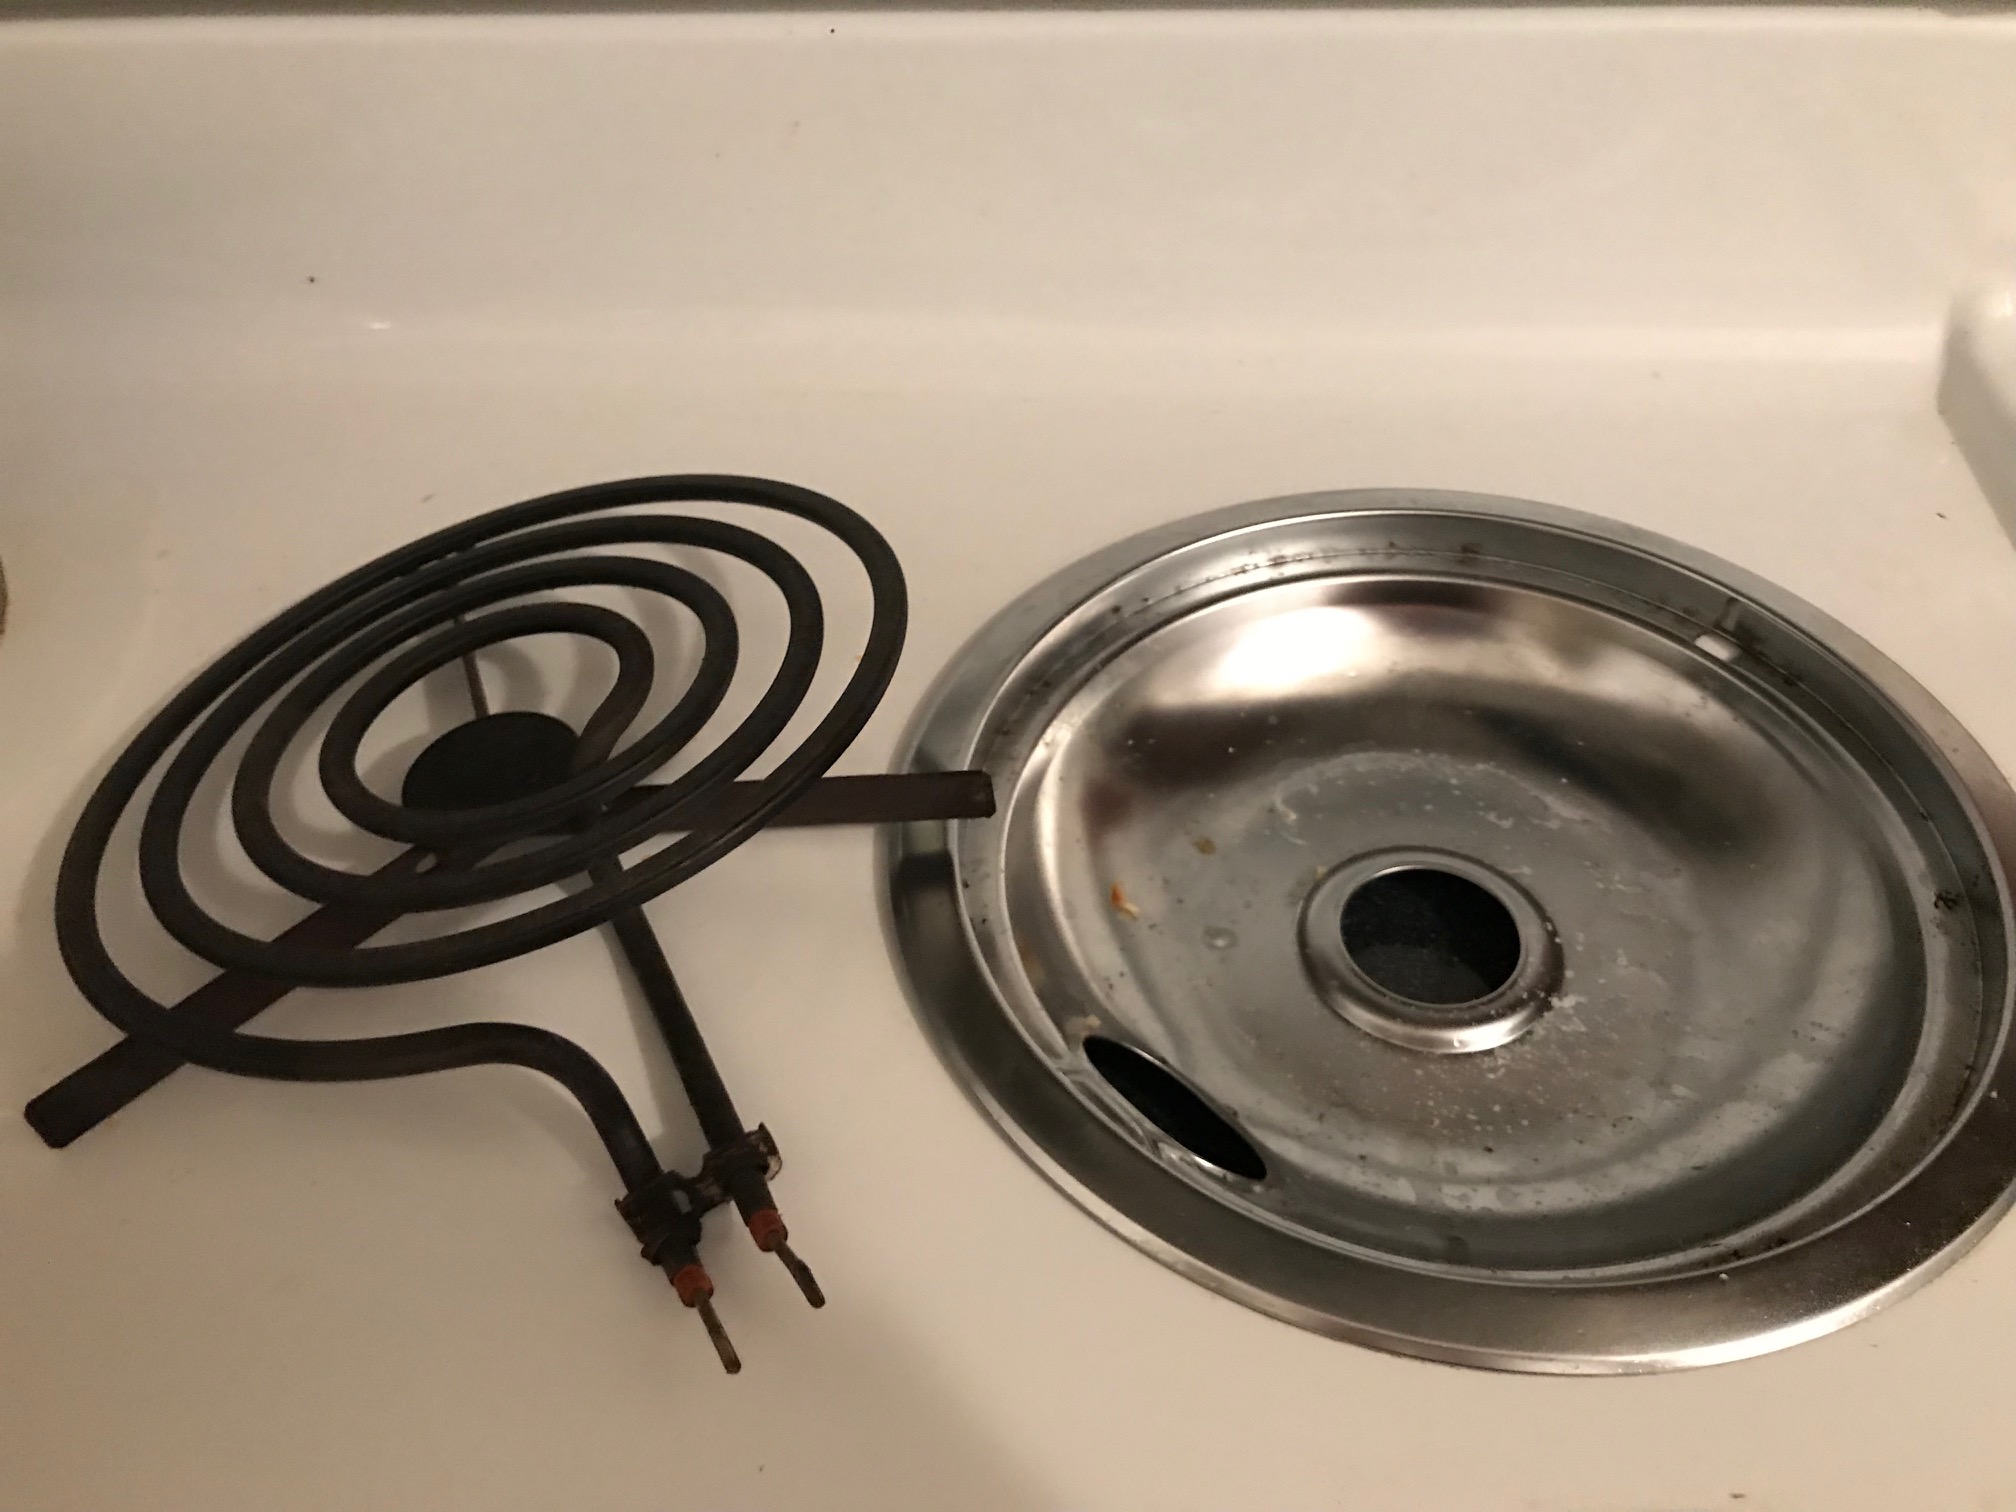 Broken stove